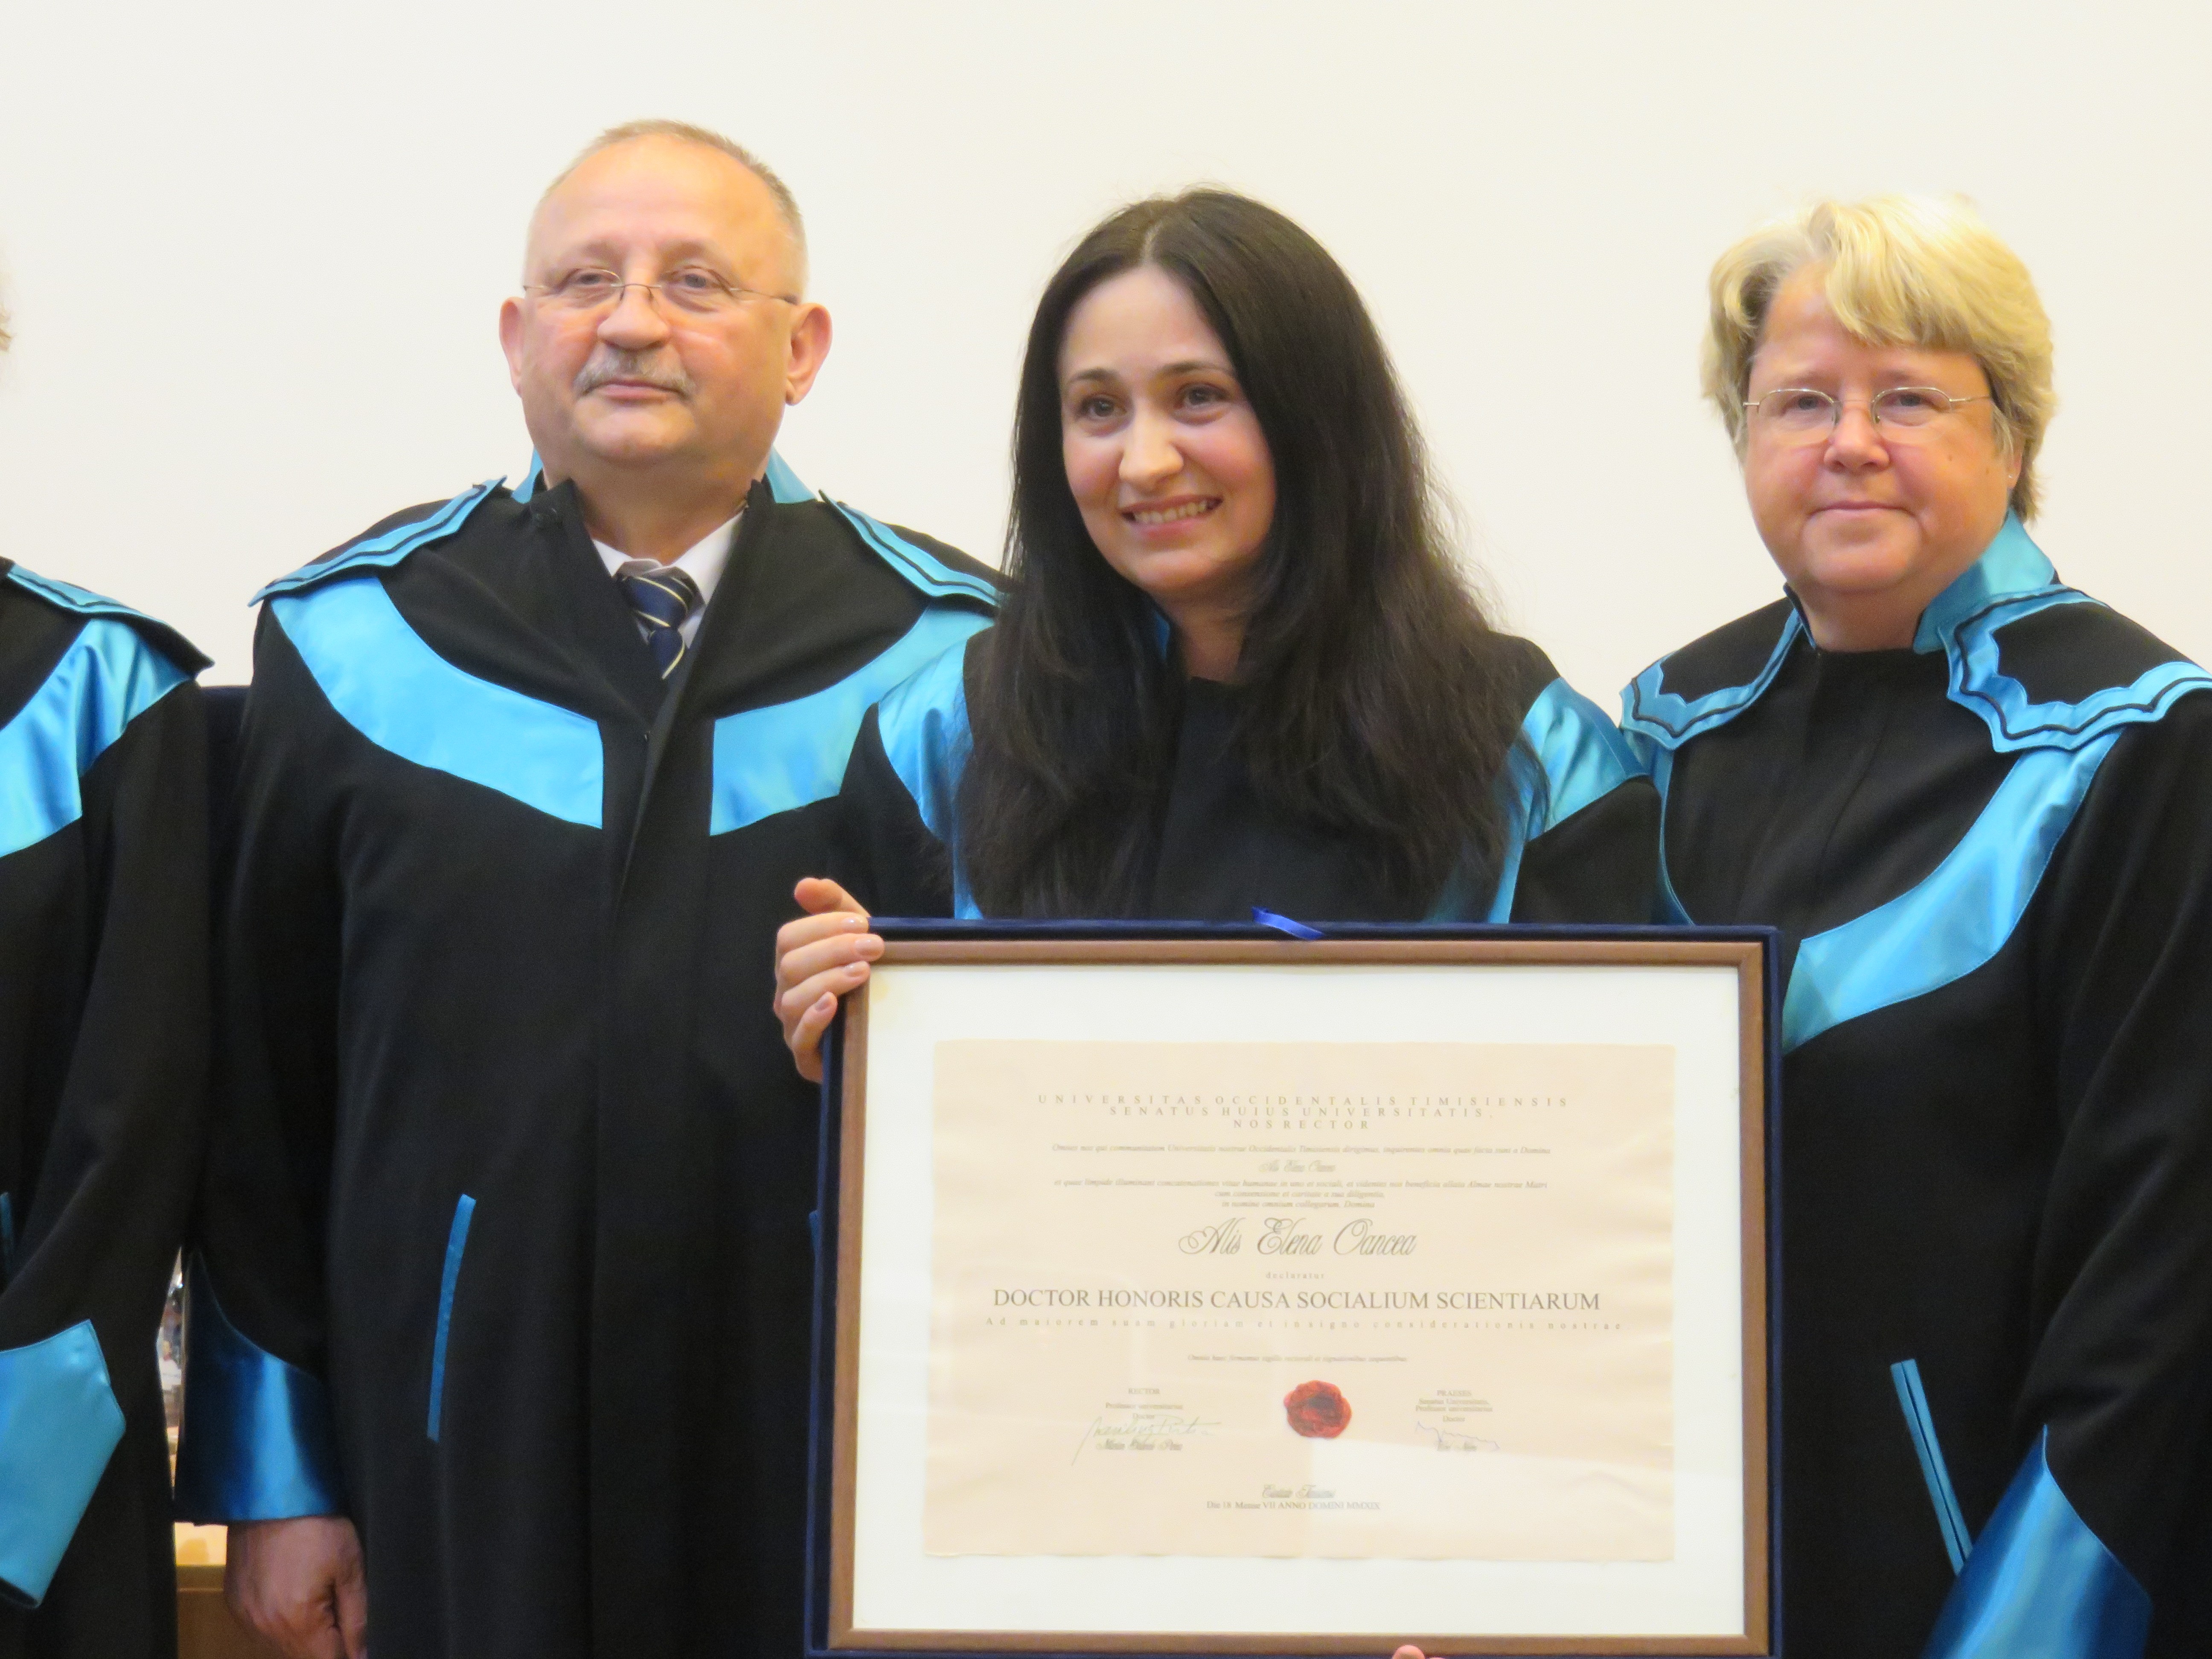 Alis Oancea receiving her Honorary Doctorate